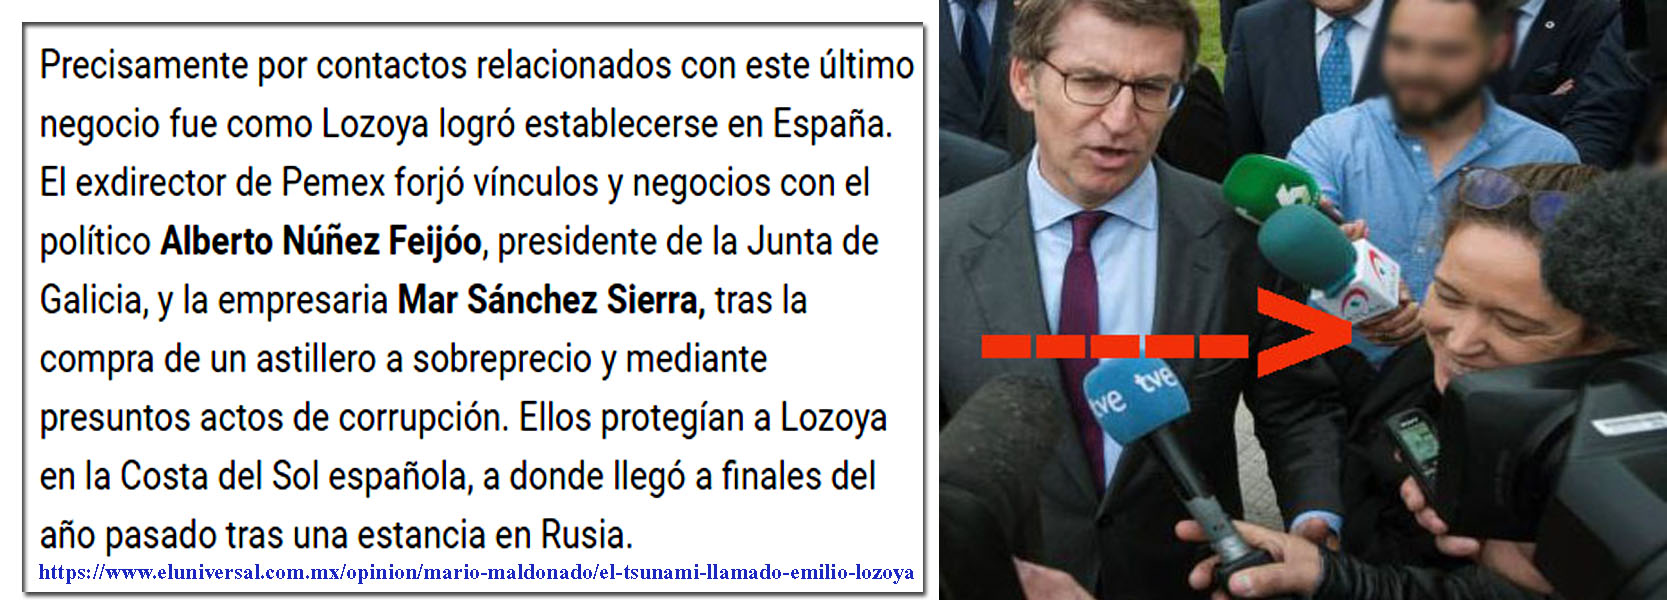 Un diario de México relaciona a Lozoya, Feijóo y Mar Sánchez ...